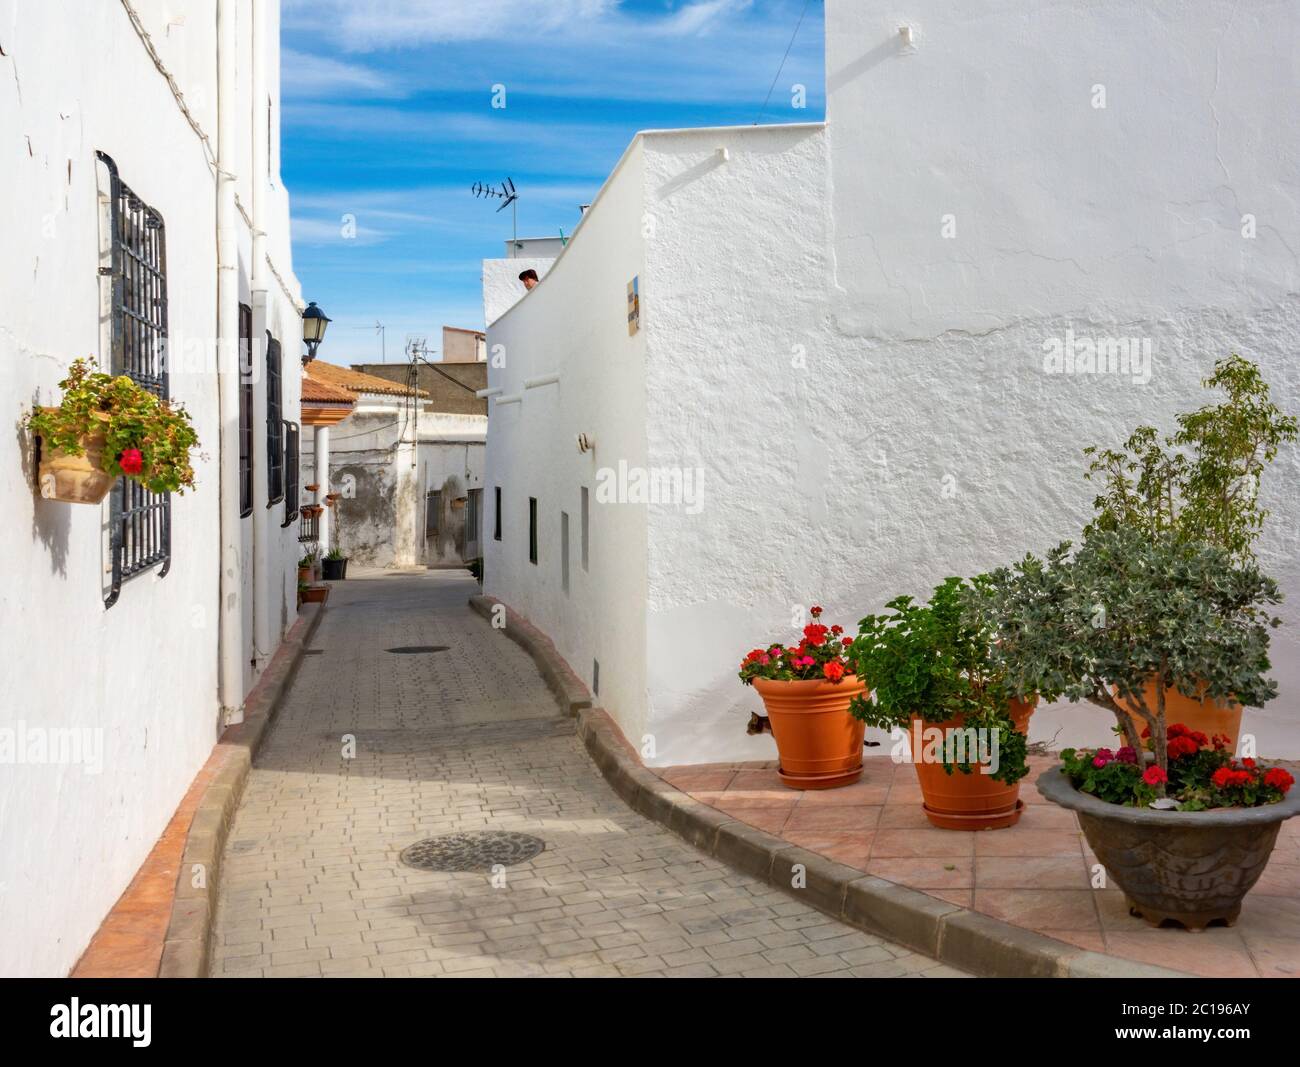 Rues d'une ville blanche appelée Lucainena de las Torres en Espagne. Quelques fleurs et balcons. Banque D'Images